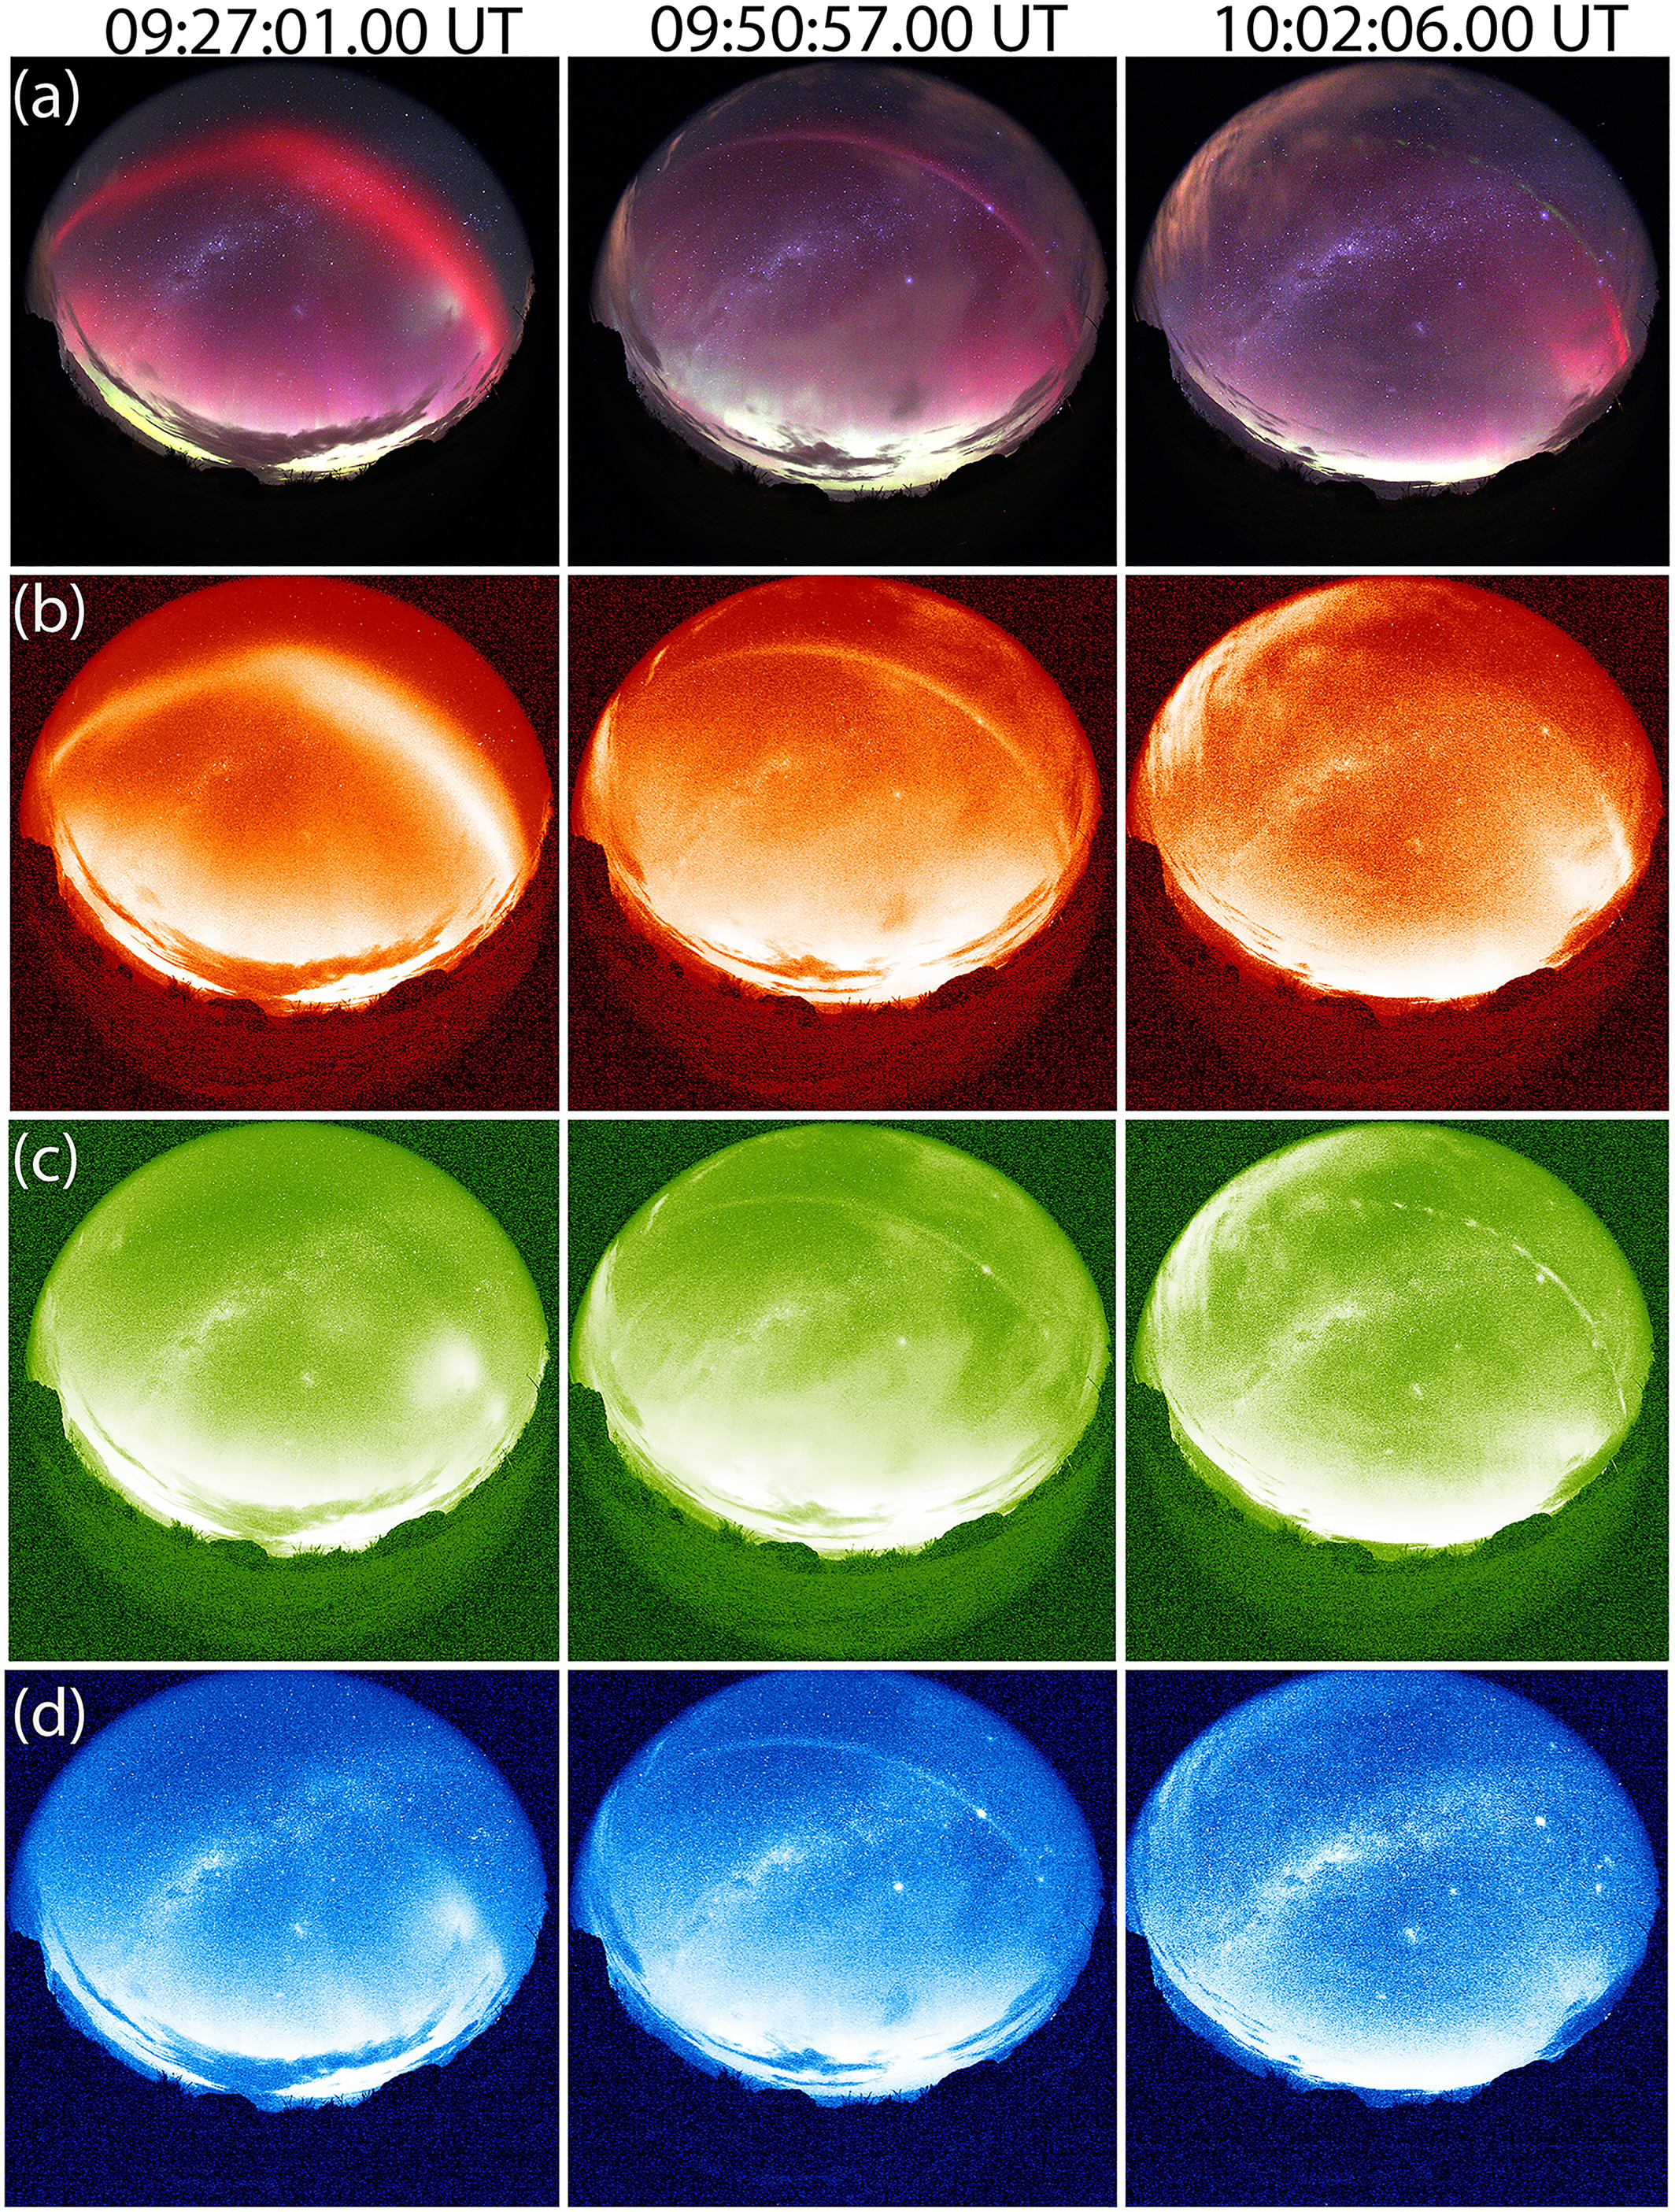 Il set completo di immagini aurore, che mostra gli oggetti aurorali attraverso una gamma di filtri colorati.